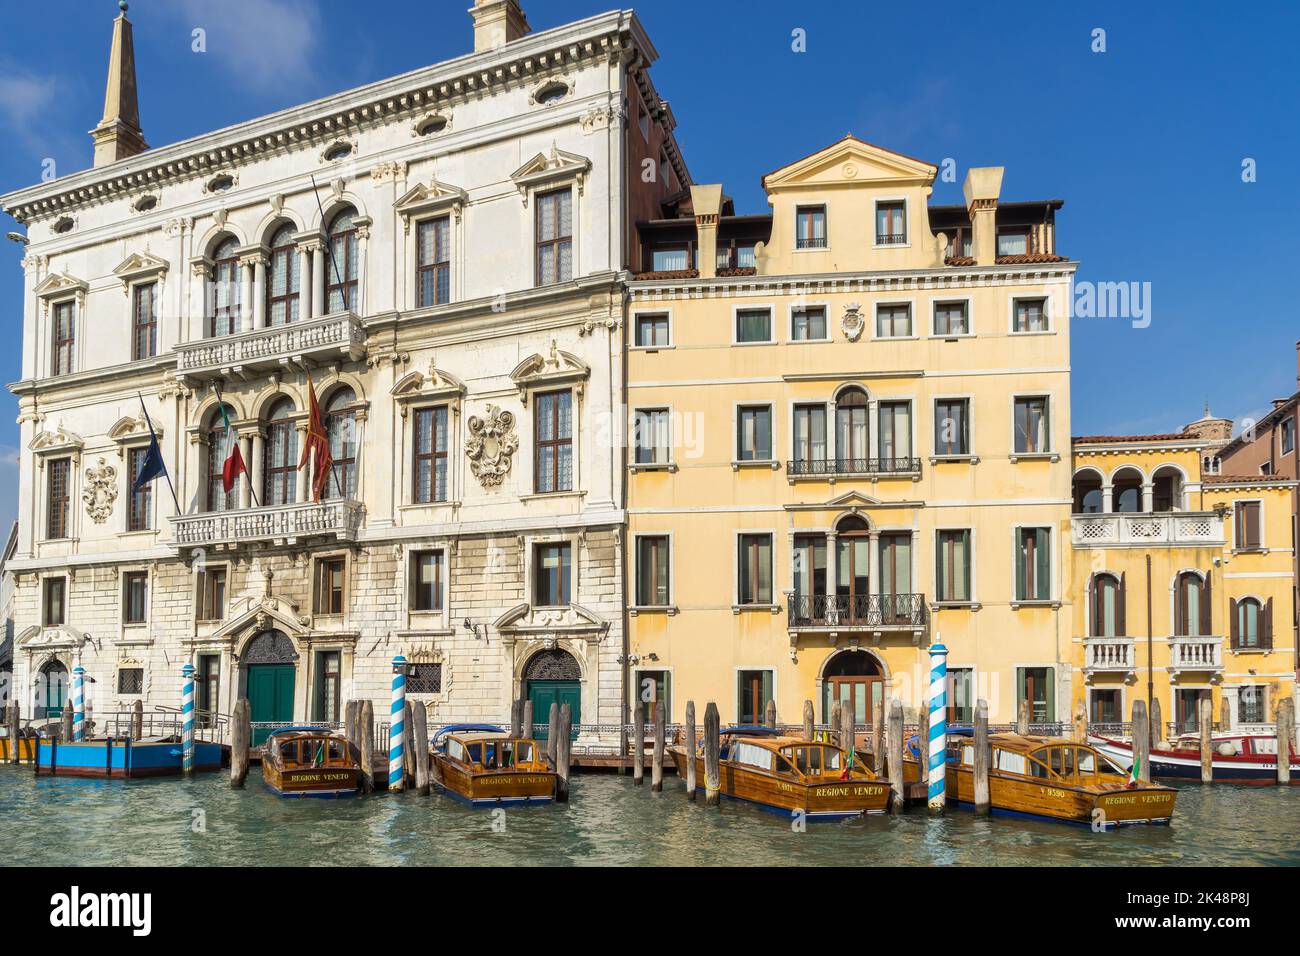 VENISE, ITALIE - OCTOBRE 12 : lancement de moteurs amarrés à Venise sur 12 octobre 2014 Banque D'Images